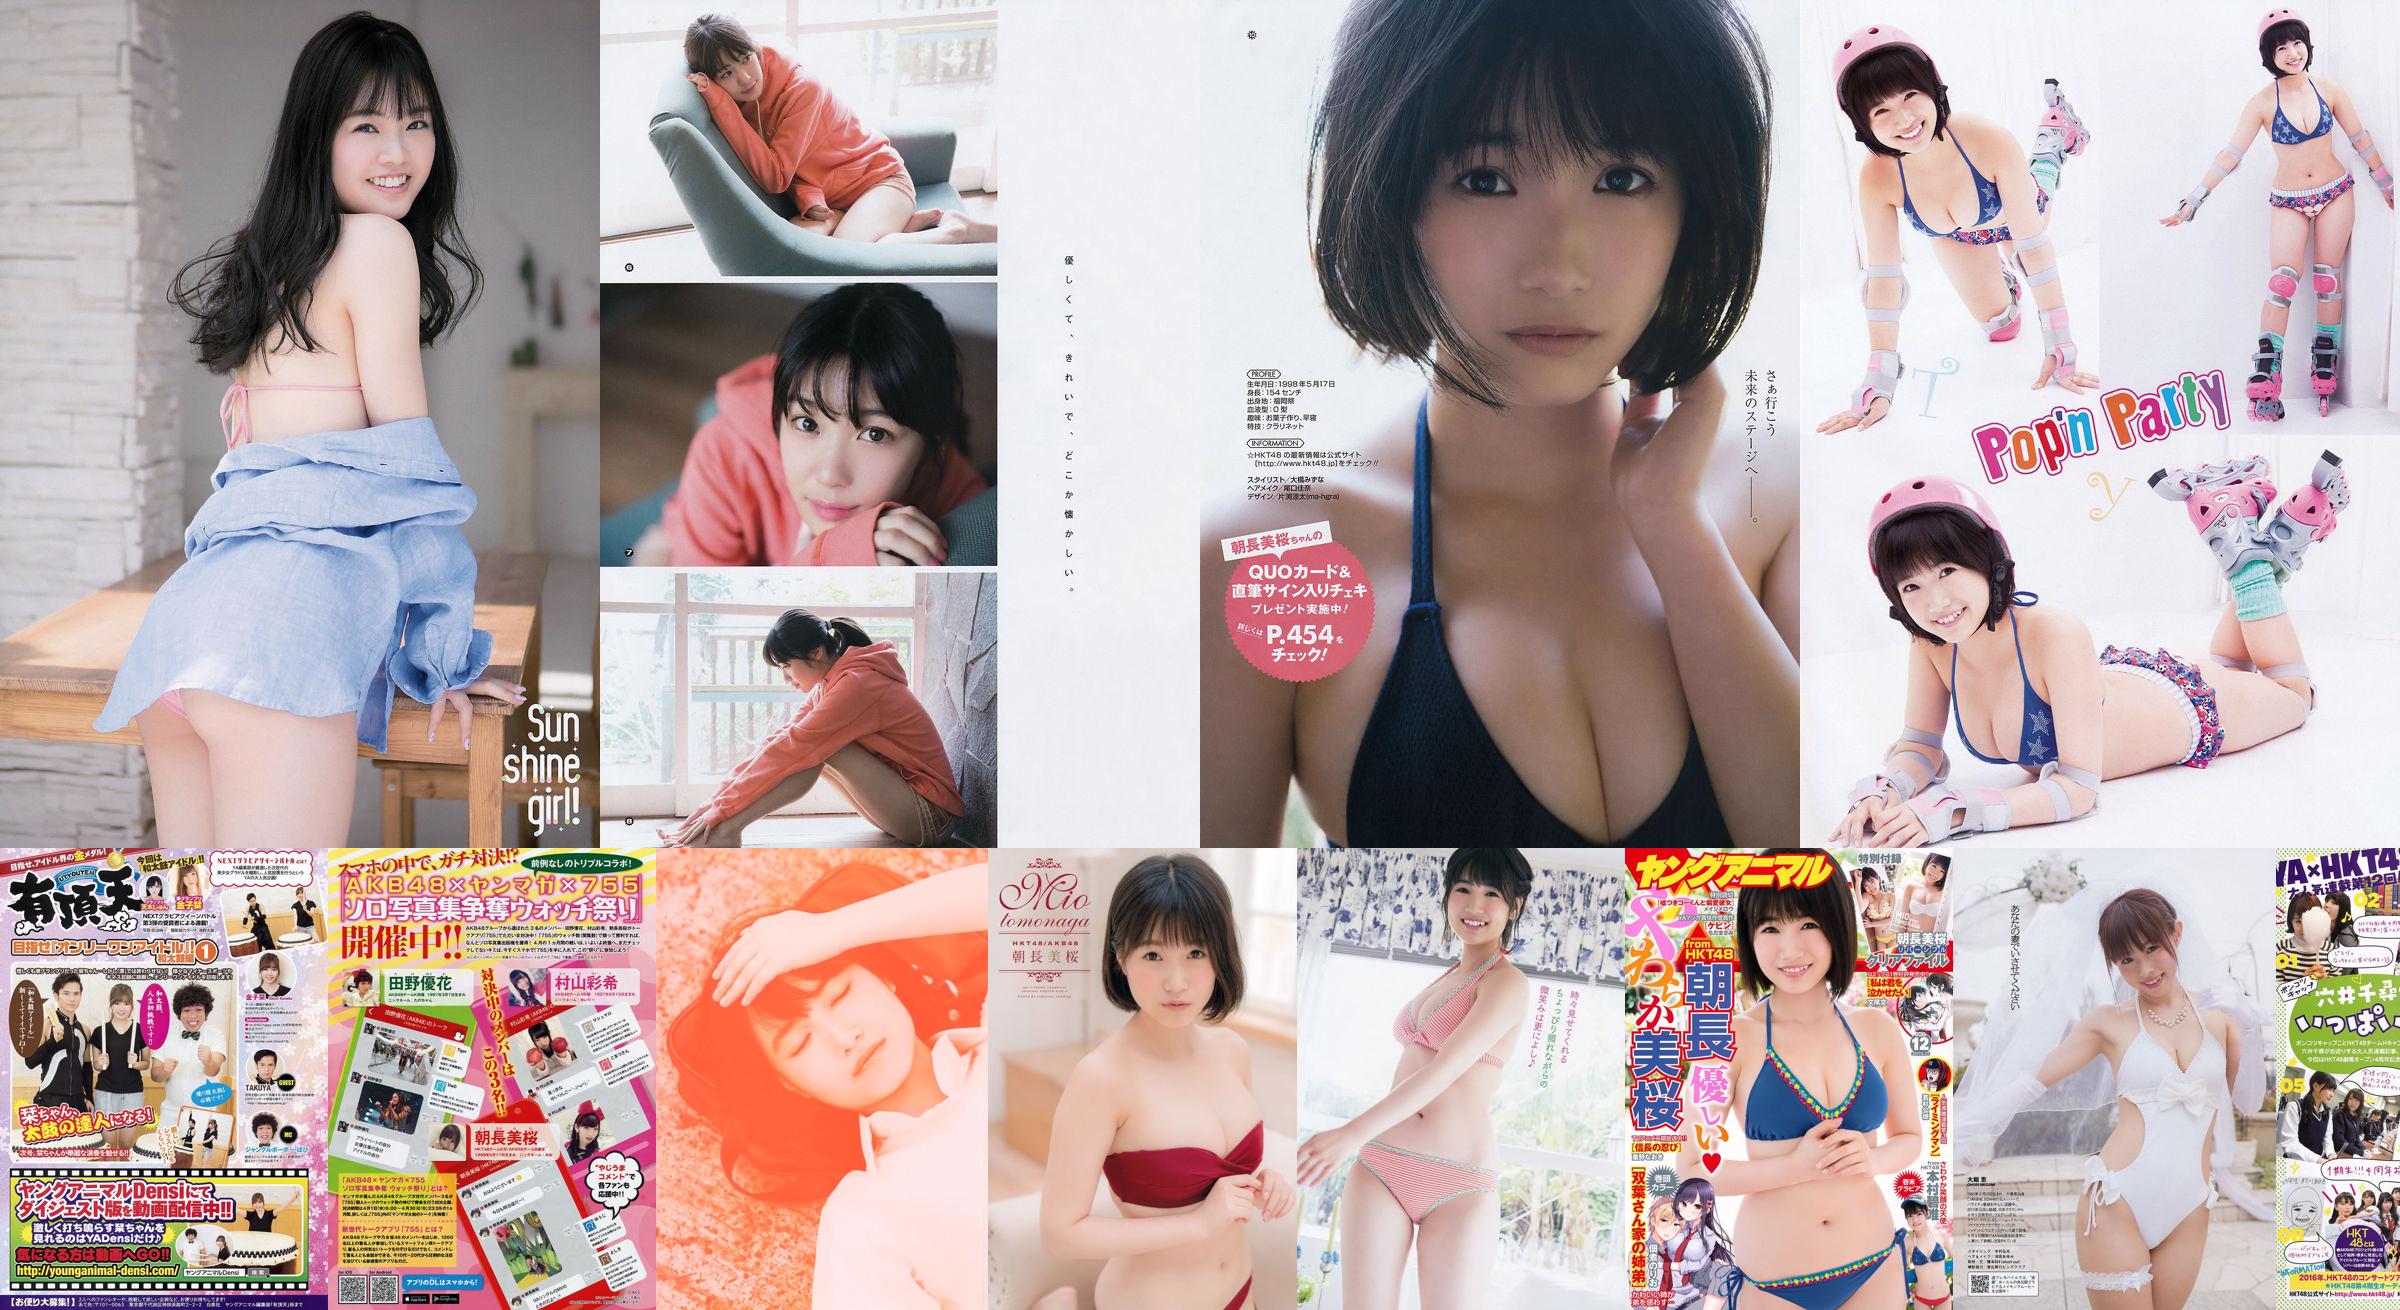 [Young Magazine] Mio Tomonaga Haruka Kodama Natsumi Matsuoka Chiharu Saito 2015 No.21 Foto Moshi No.205d9f Pagina 1